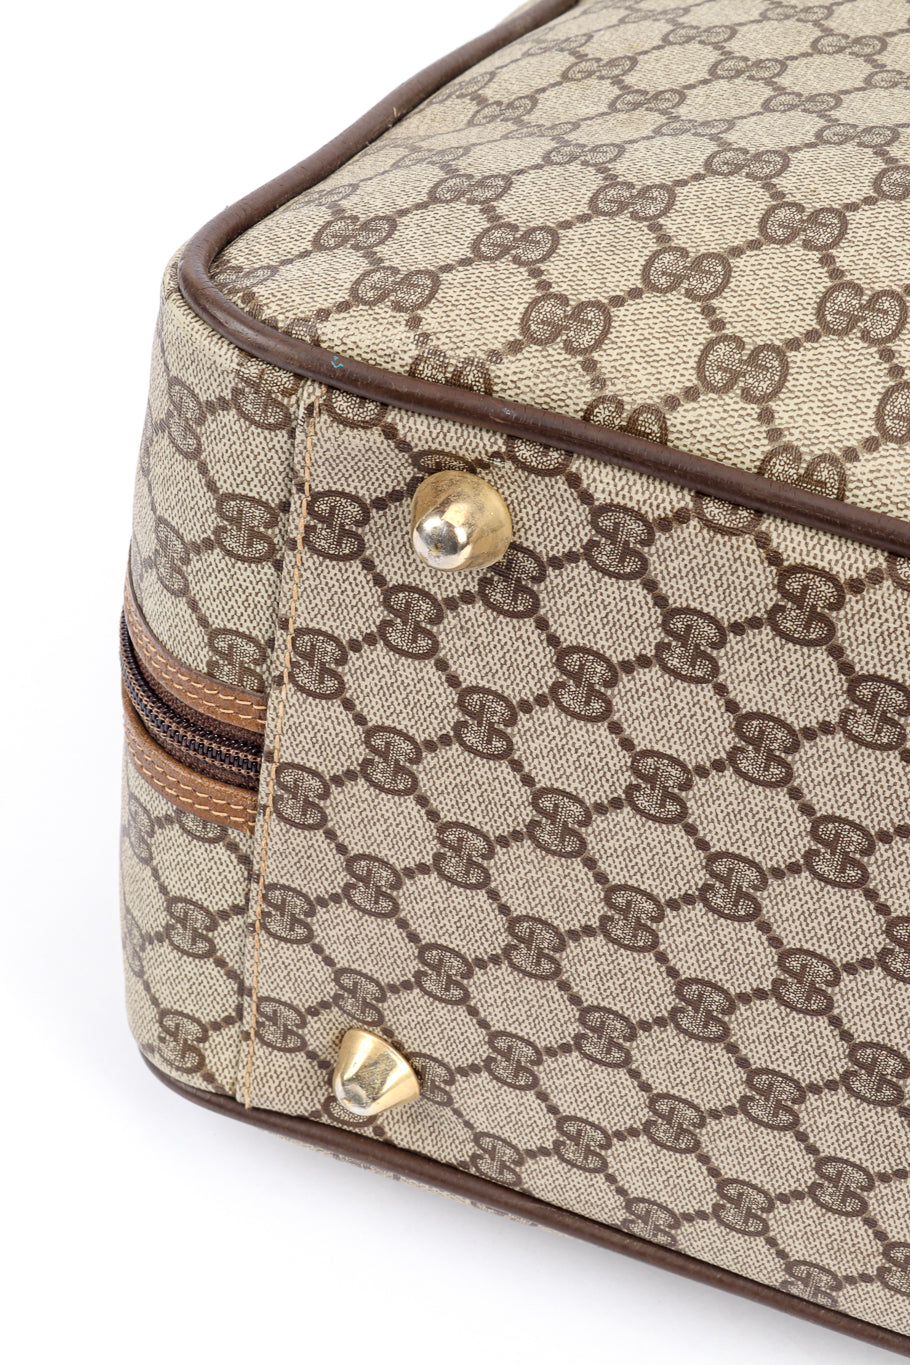 Vintage Gucci Monogram Suitcase bottom feet @recess la